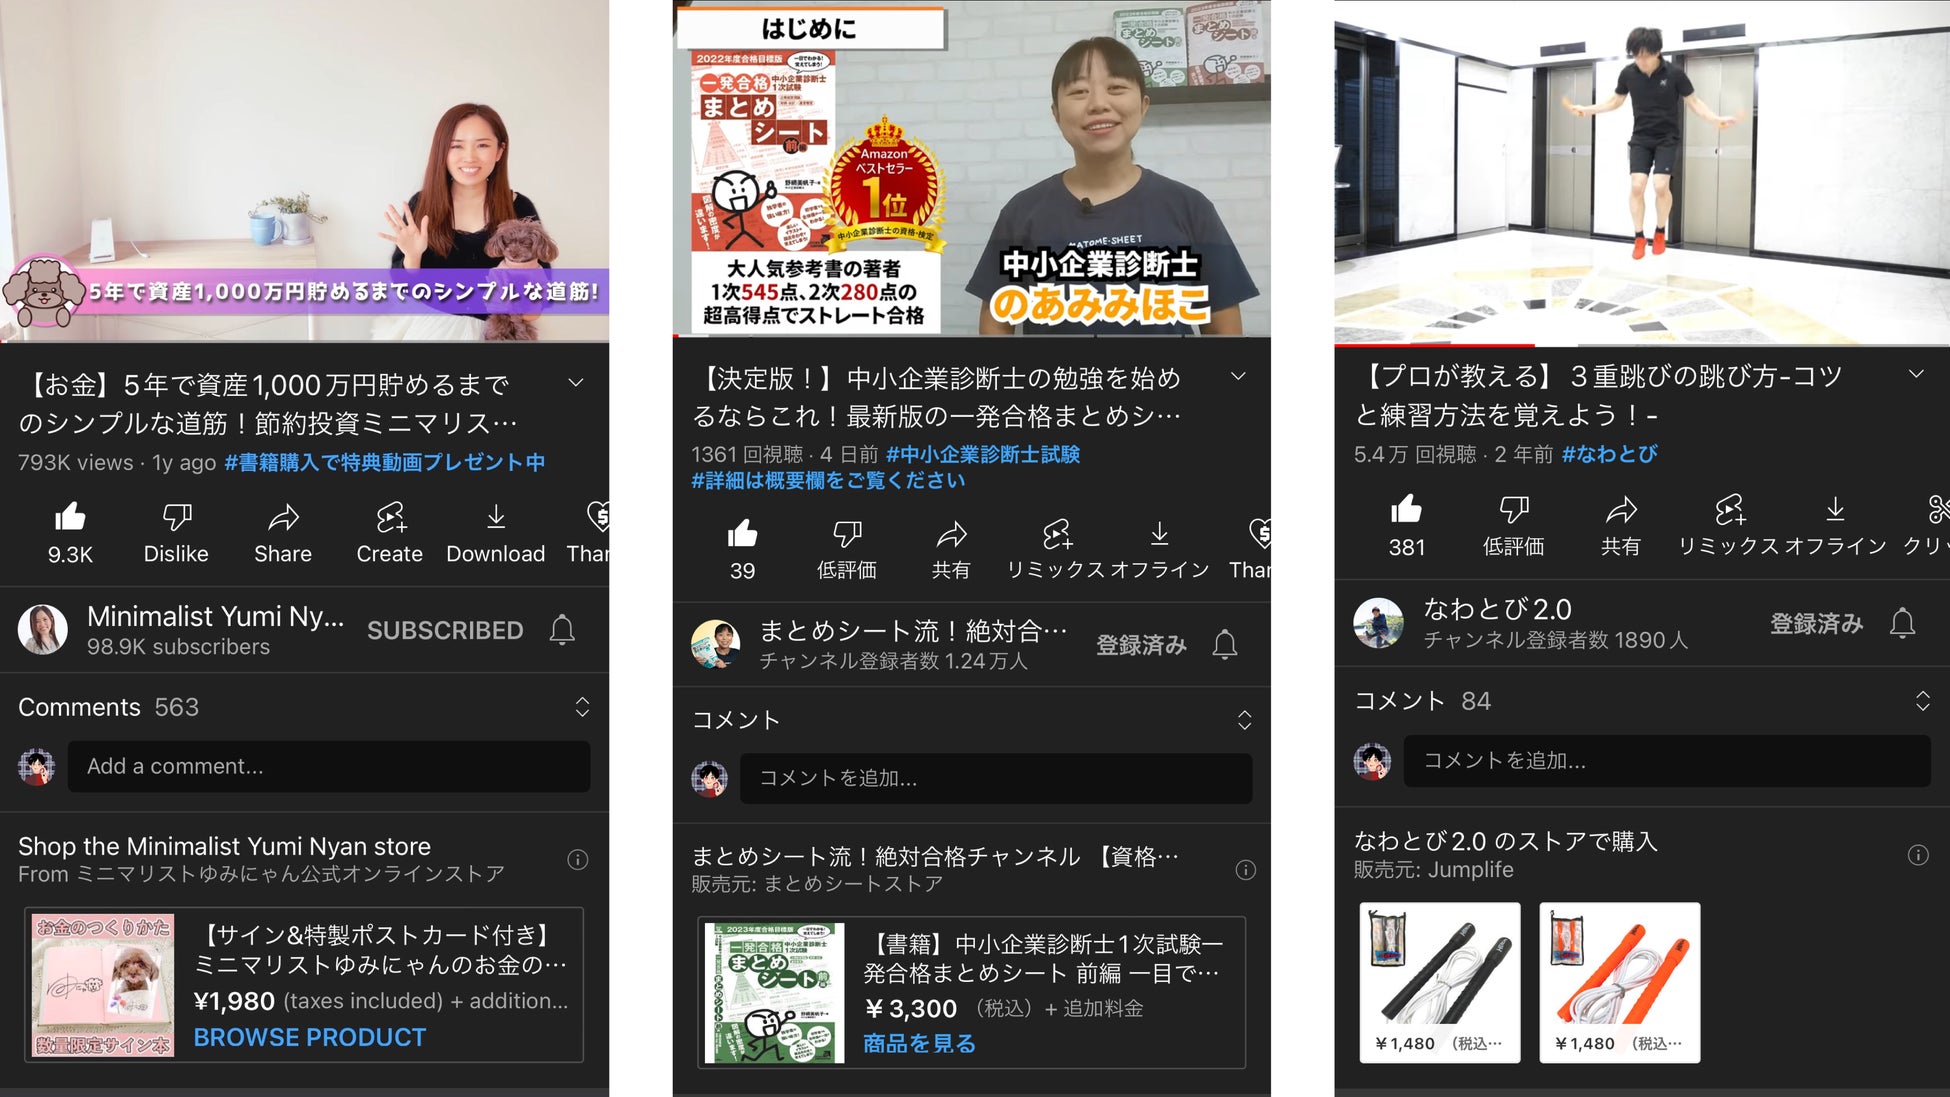 YouTubeショッピング × Shopify でユーチューバーの販促支援「あんコーポレーション株式会社」設立のお知らせのサブ画像5